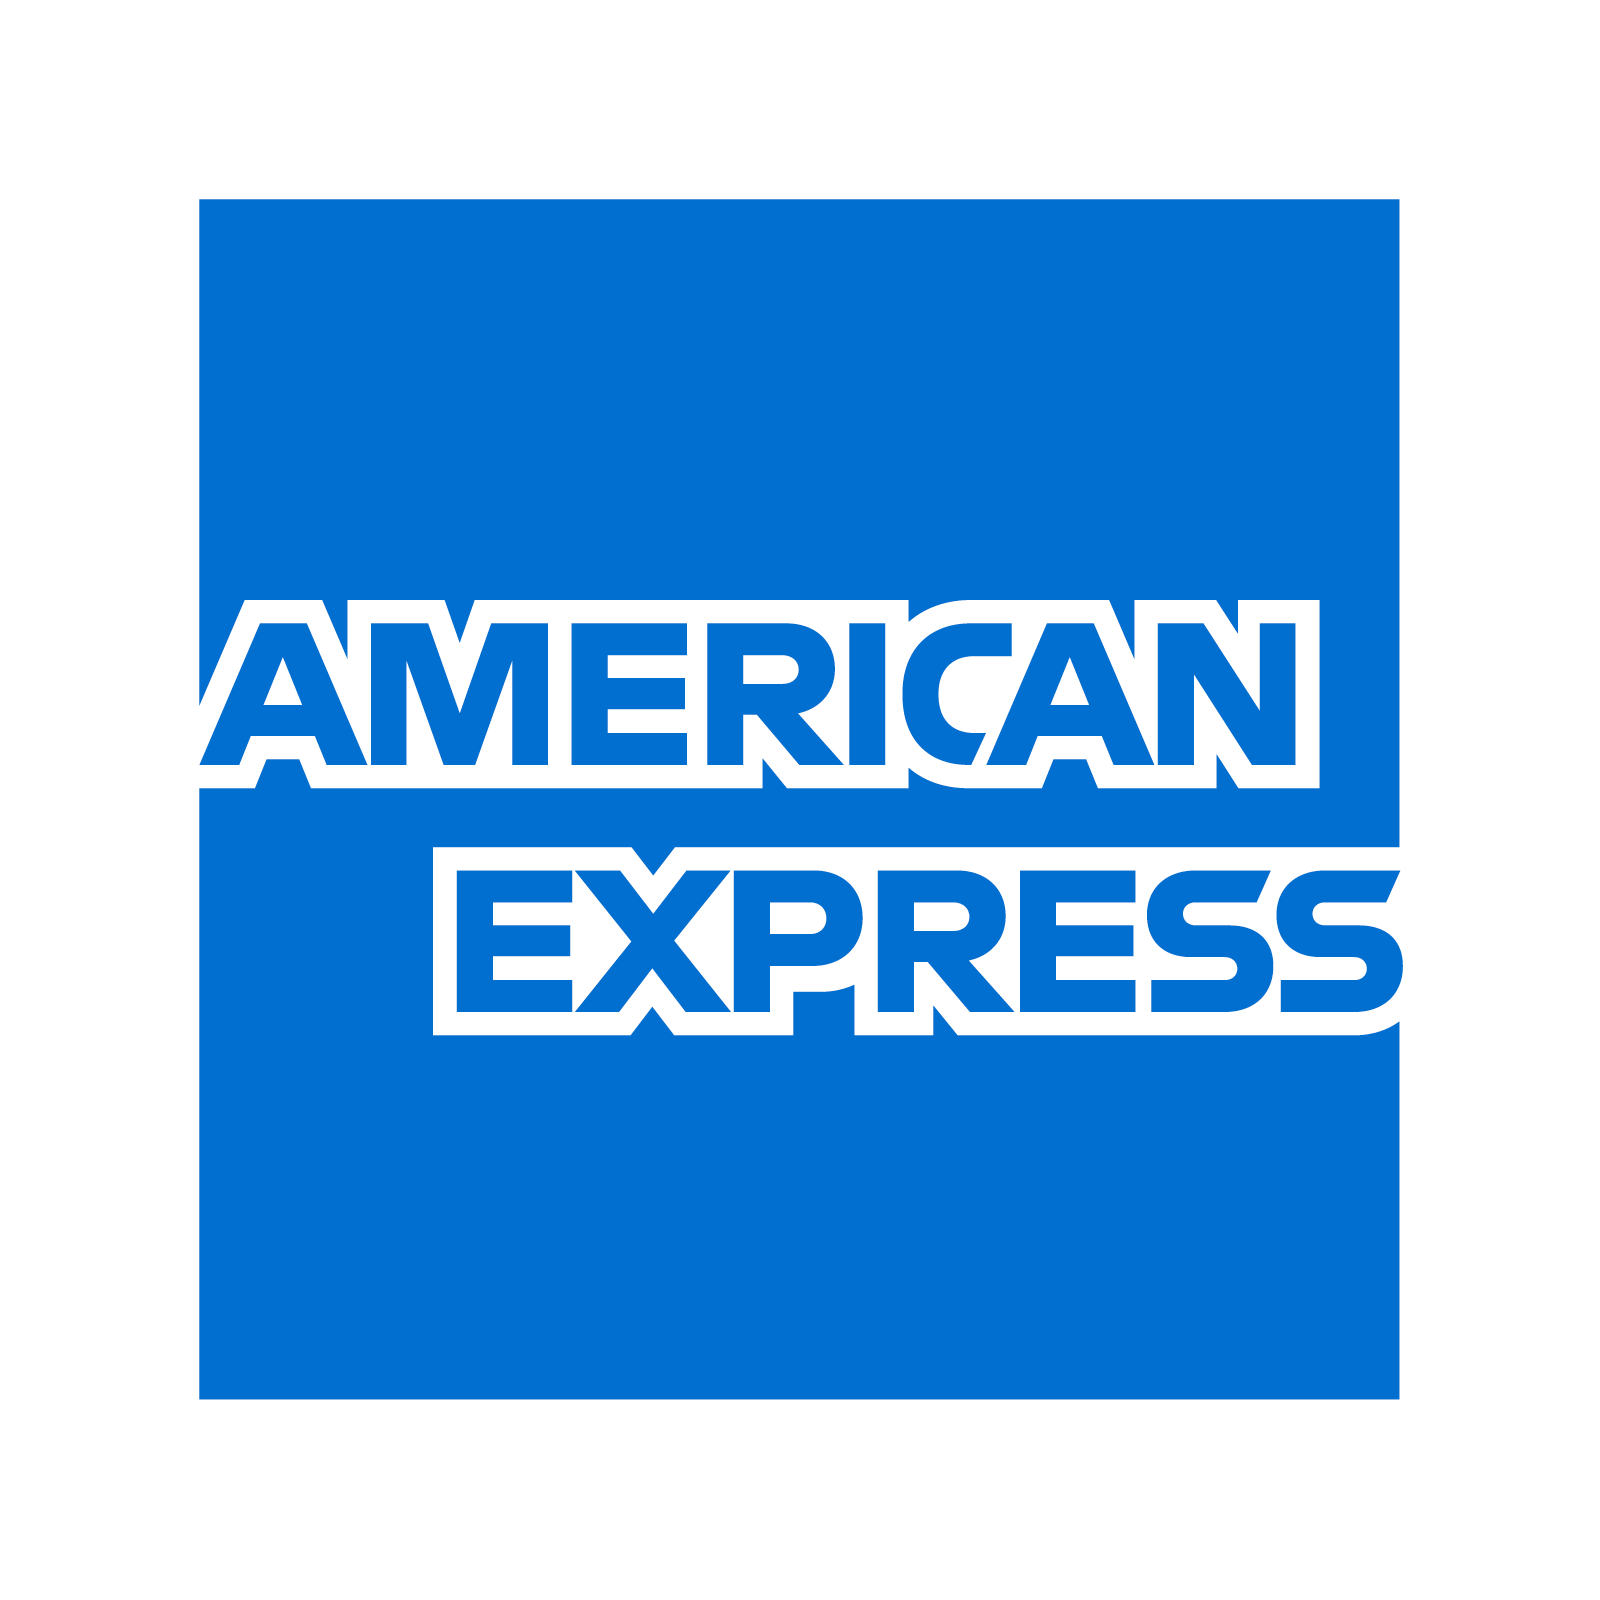 American Express logo PNG качественное изображение